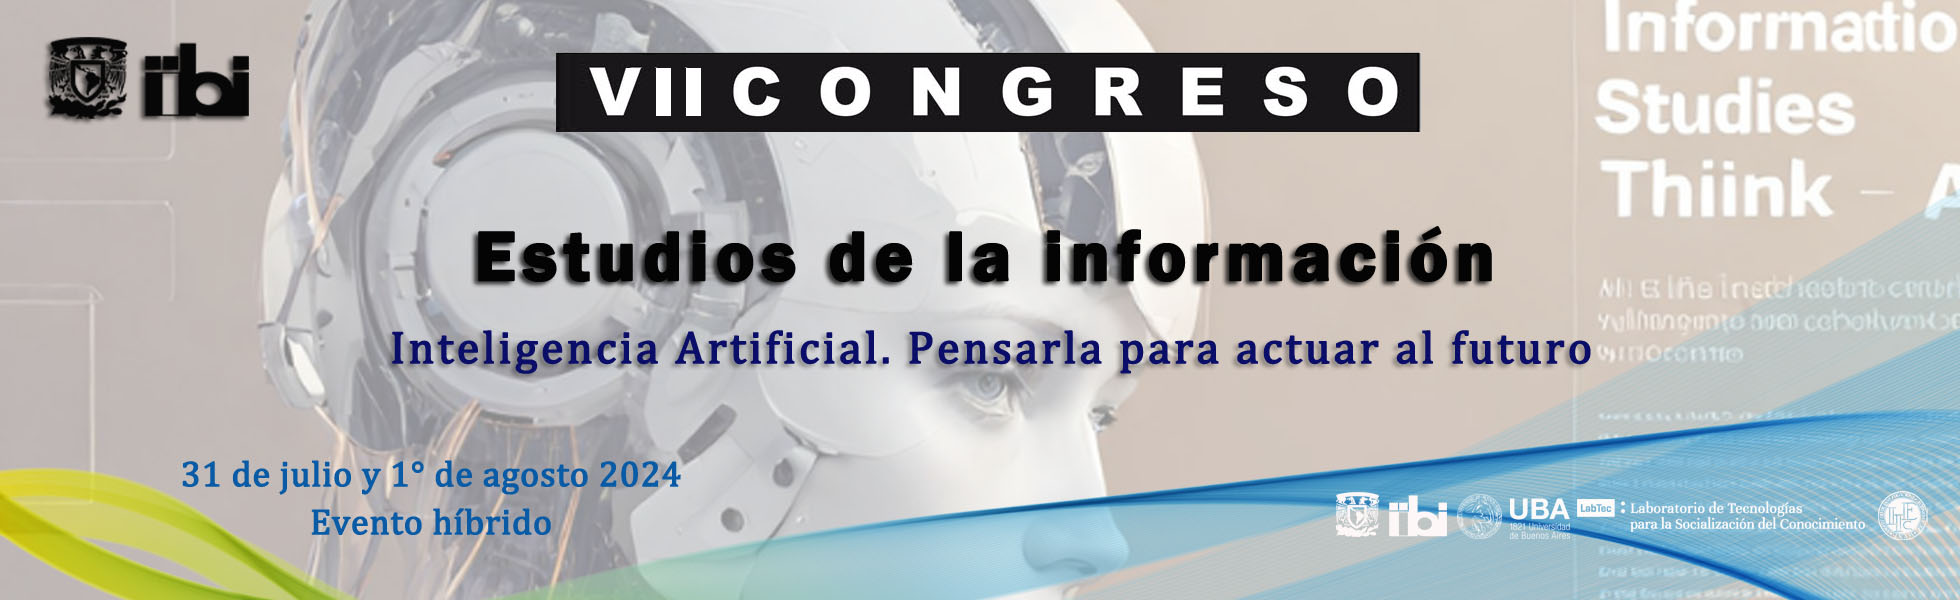 VII Congreso Estudios de la Información